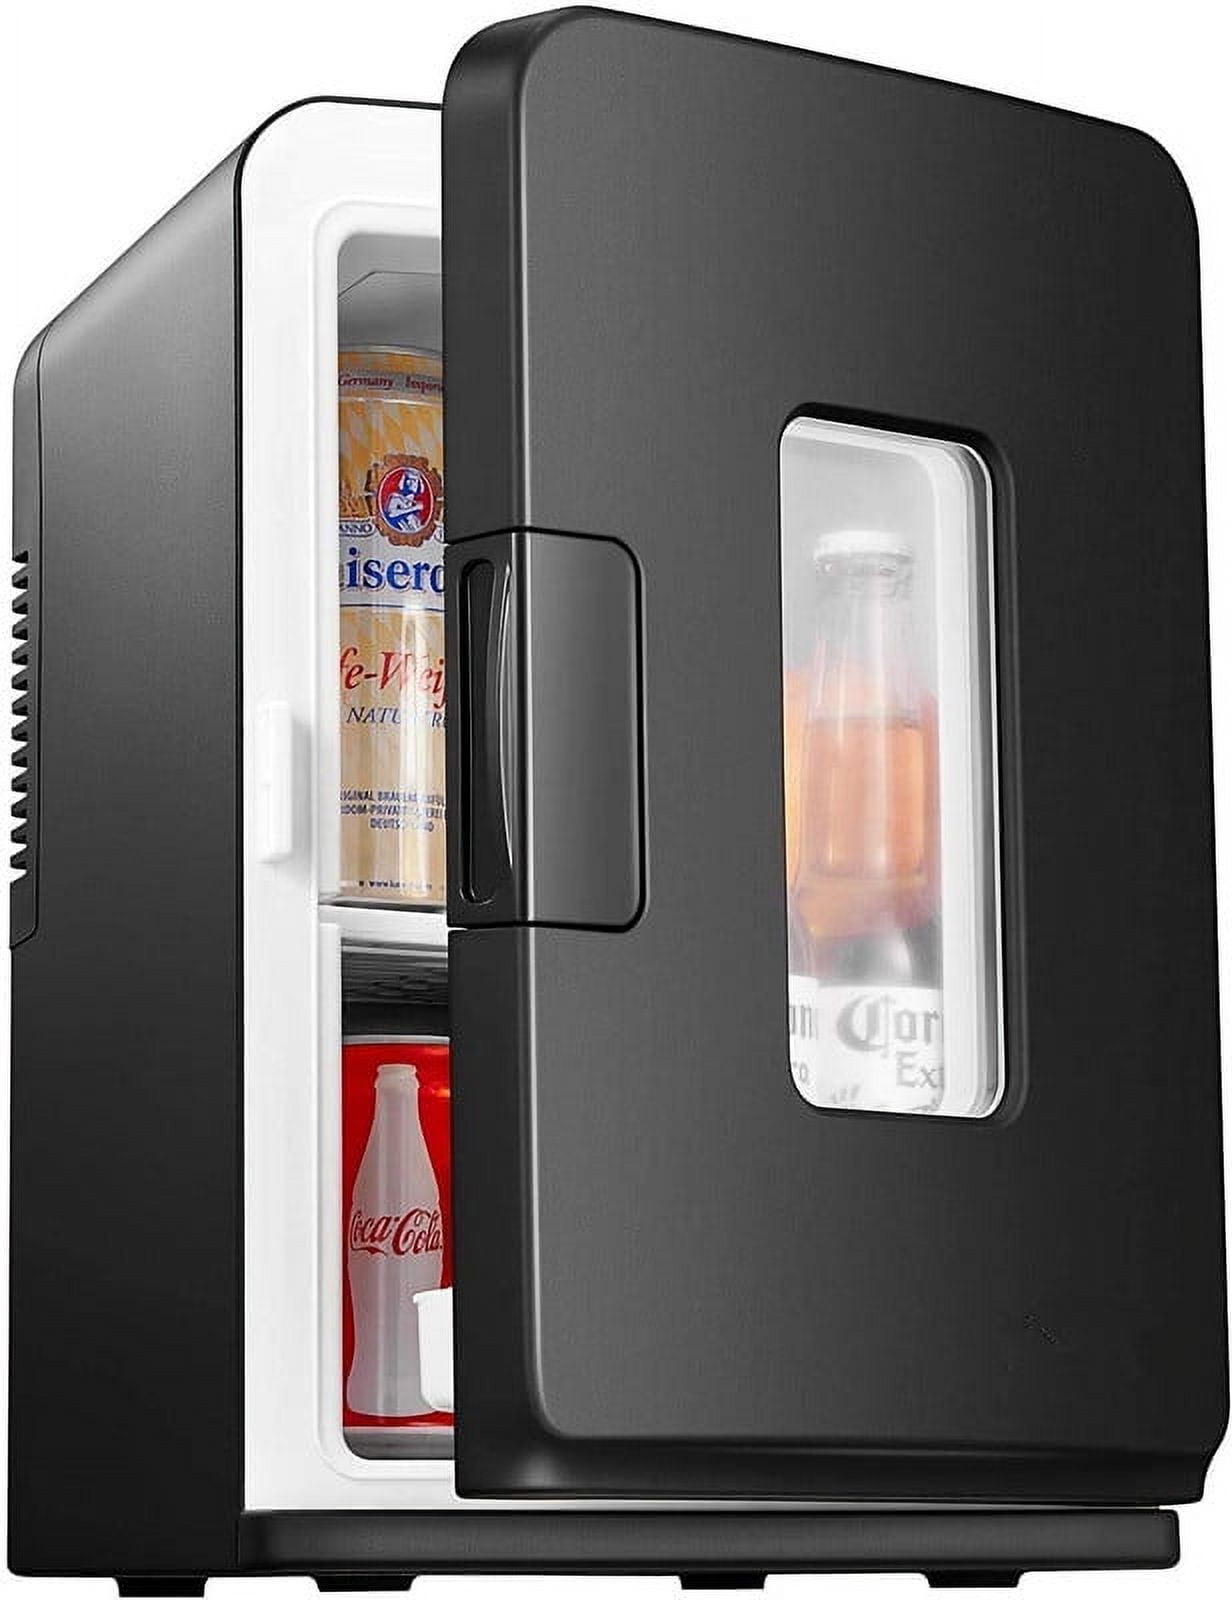 Mini Refrigeradores 150 Cm De Alto